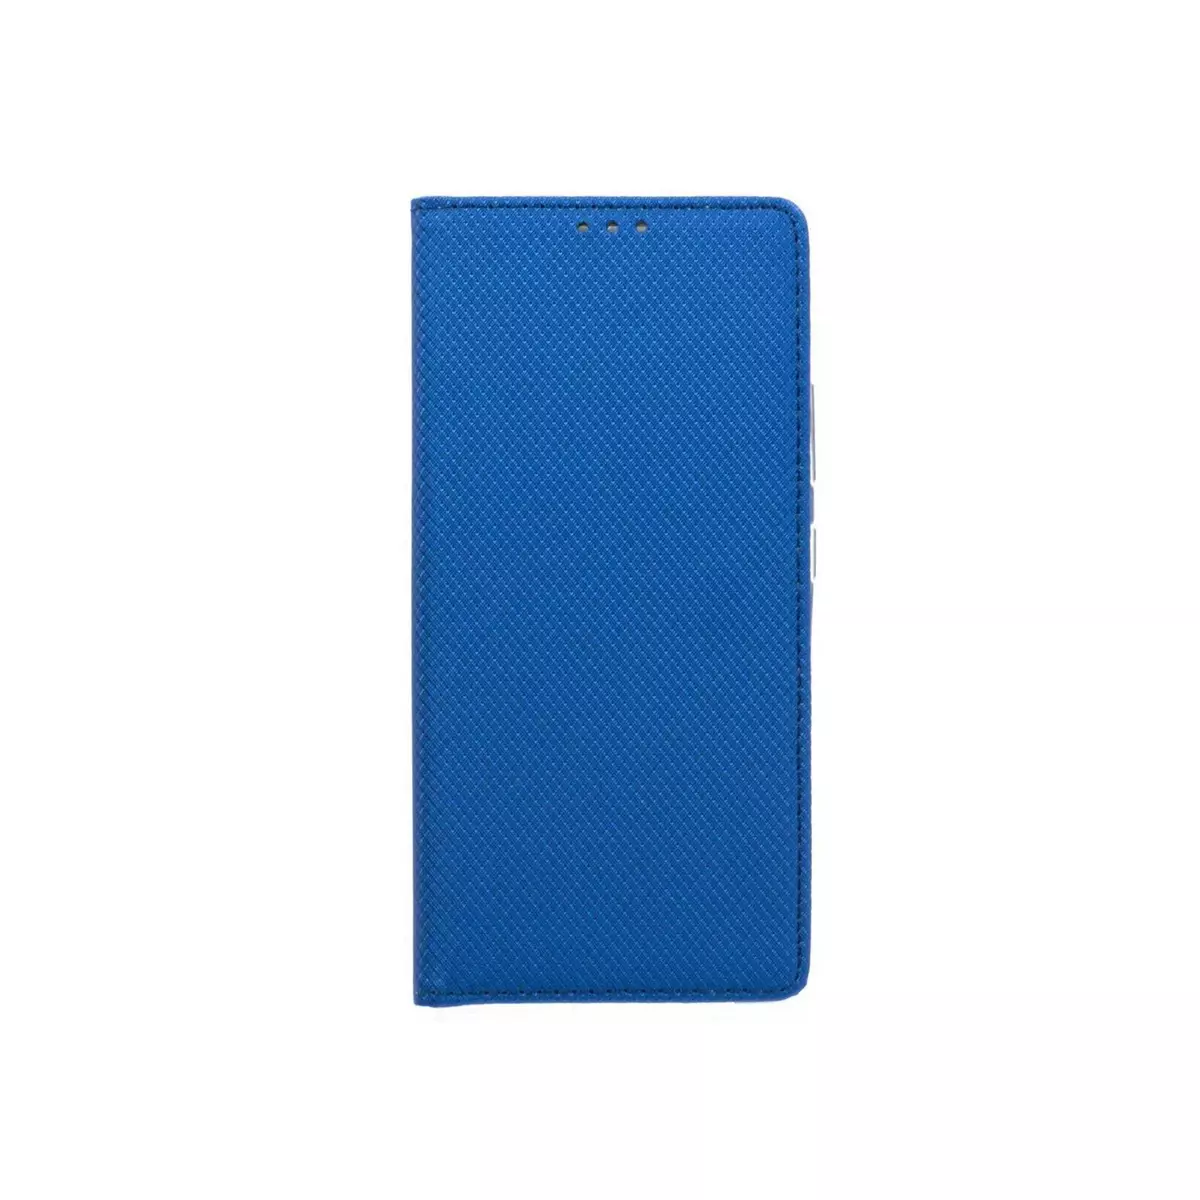 amahousse Housse bleue Galaxy S10 Lite folio texturé aimanté